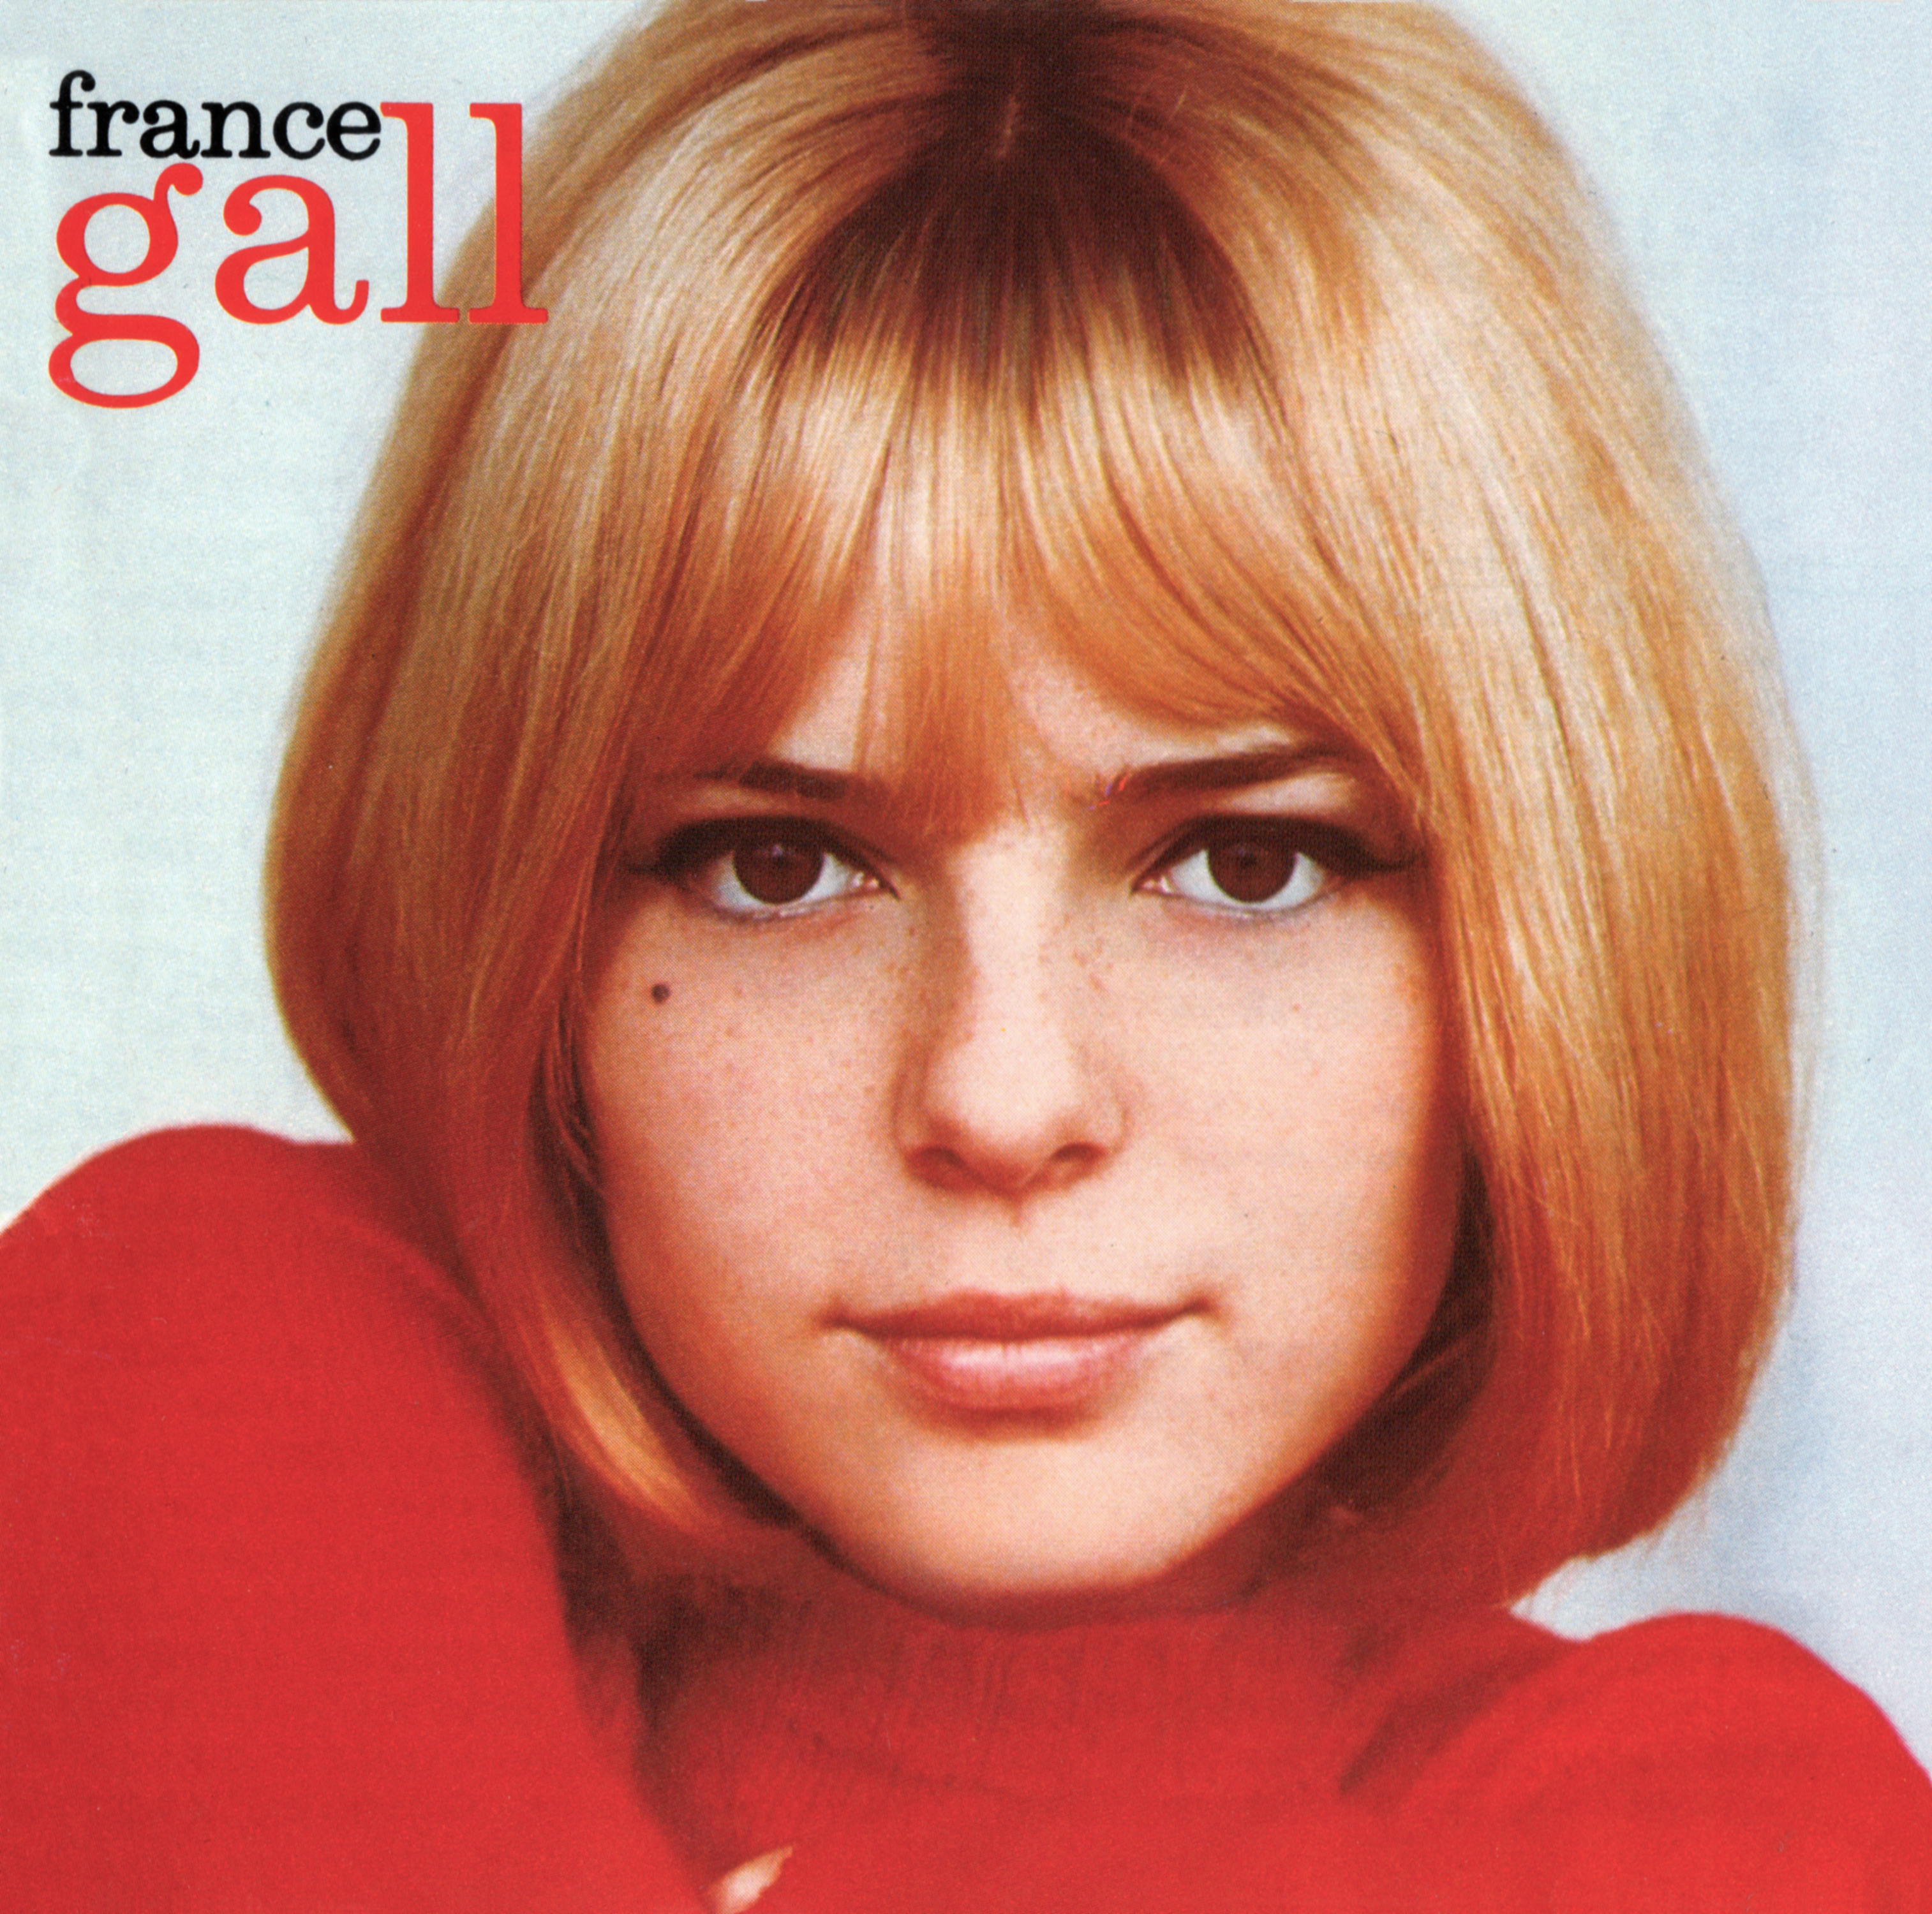 France Gall (フランス・ギャル) ベスト・アルバム『France Gall (夢みるシャンソン人形 フランス・ギャル・ベスト)』(1993年12月20日発売) 高画質CDジャケット画像 (ジャケ写)